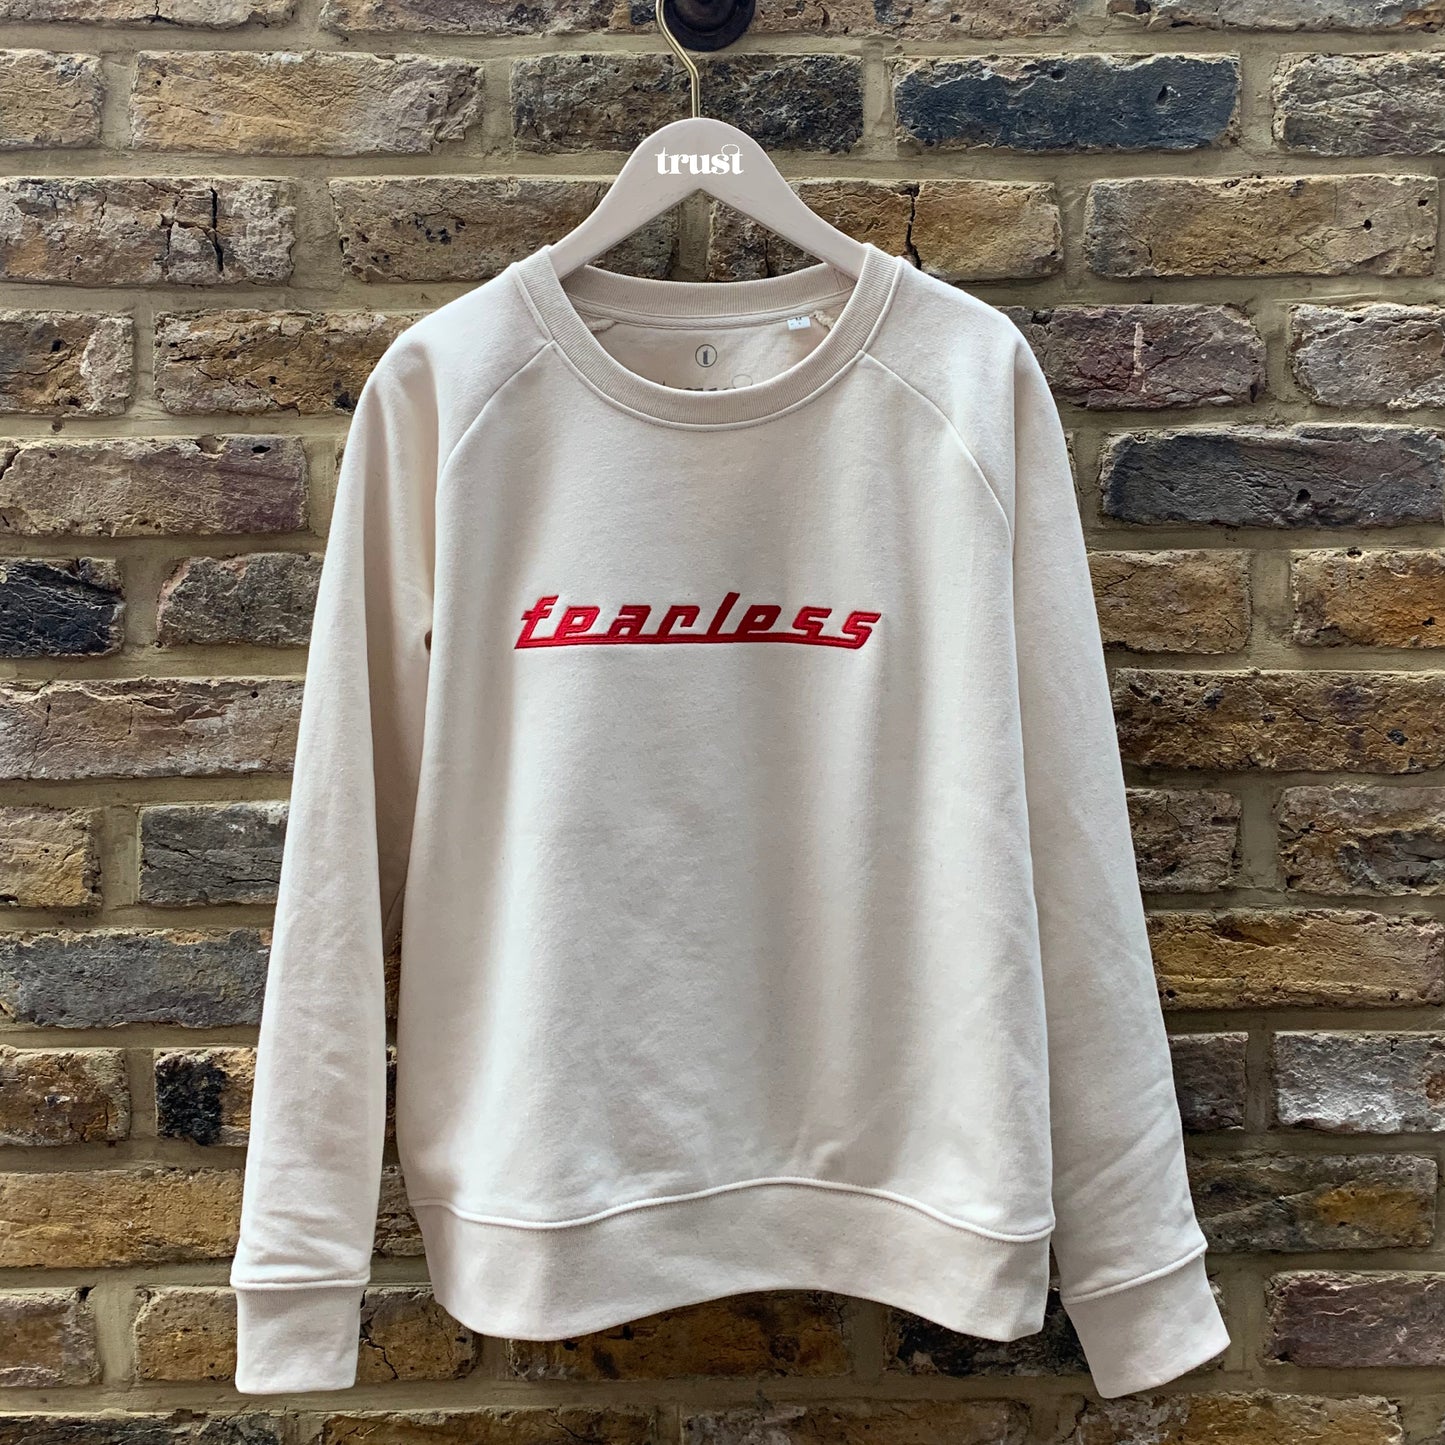 Fearless sweatshirt, Trust London - Plum & Belle